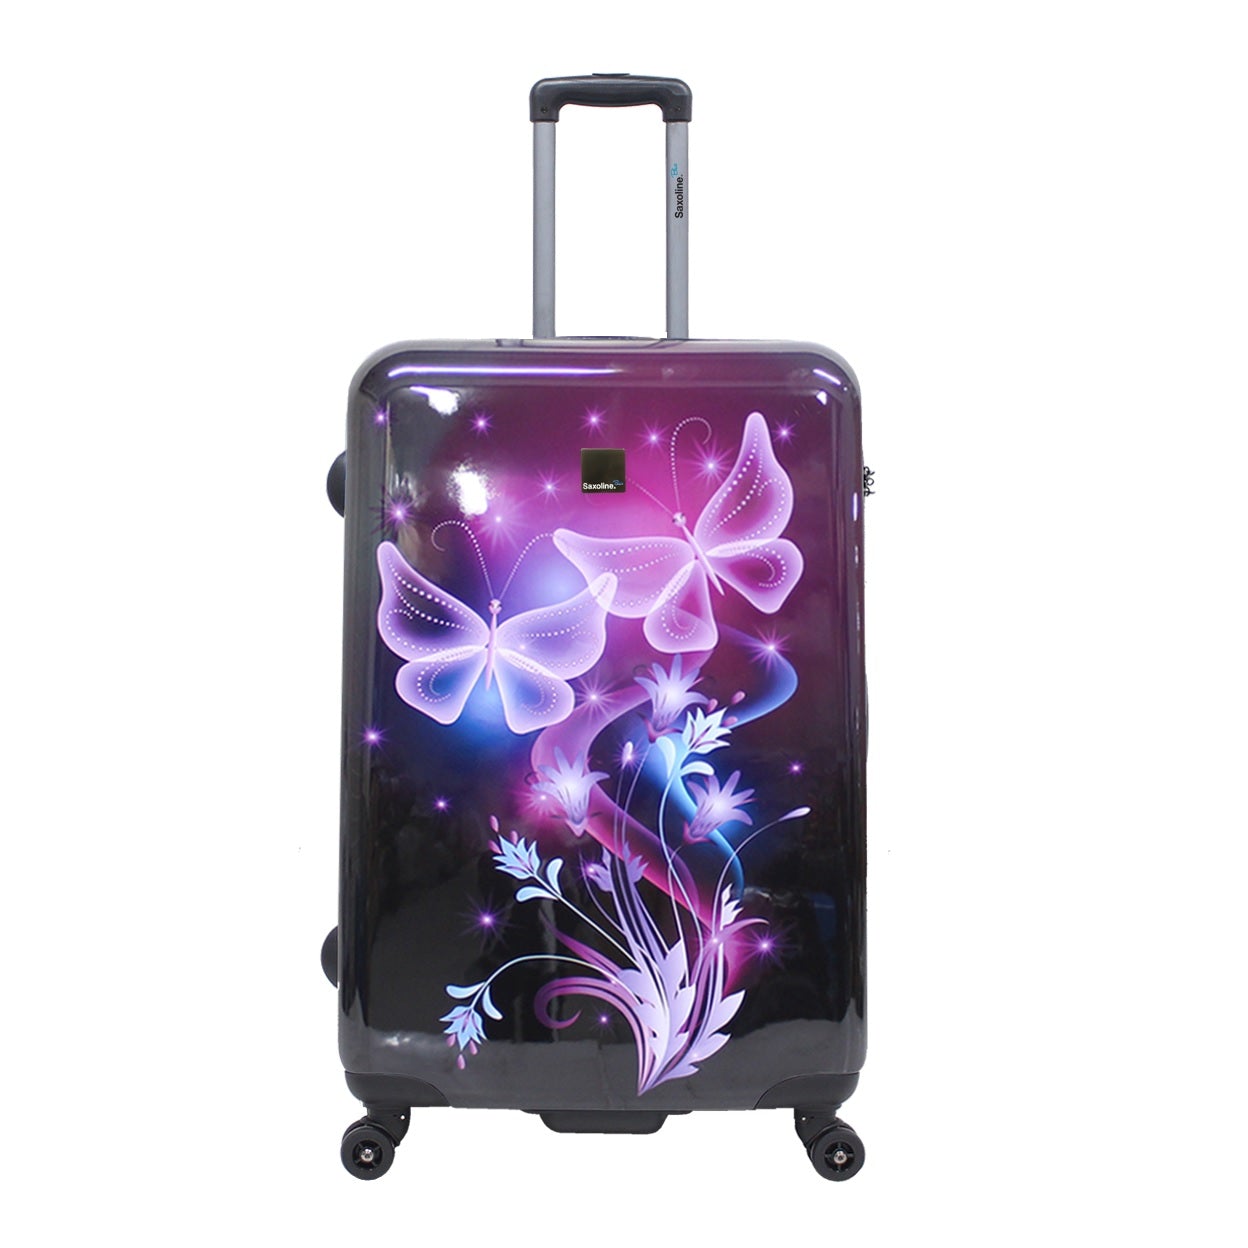 large Saxoline hard luggage with print